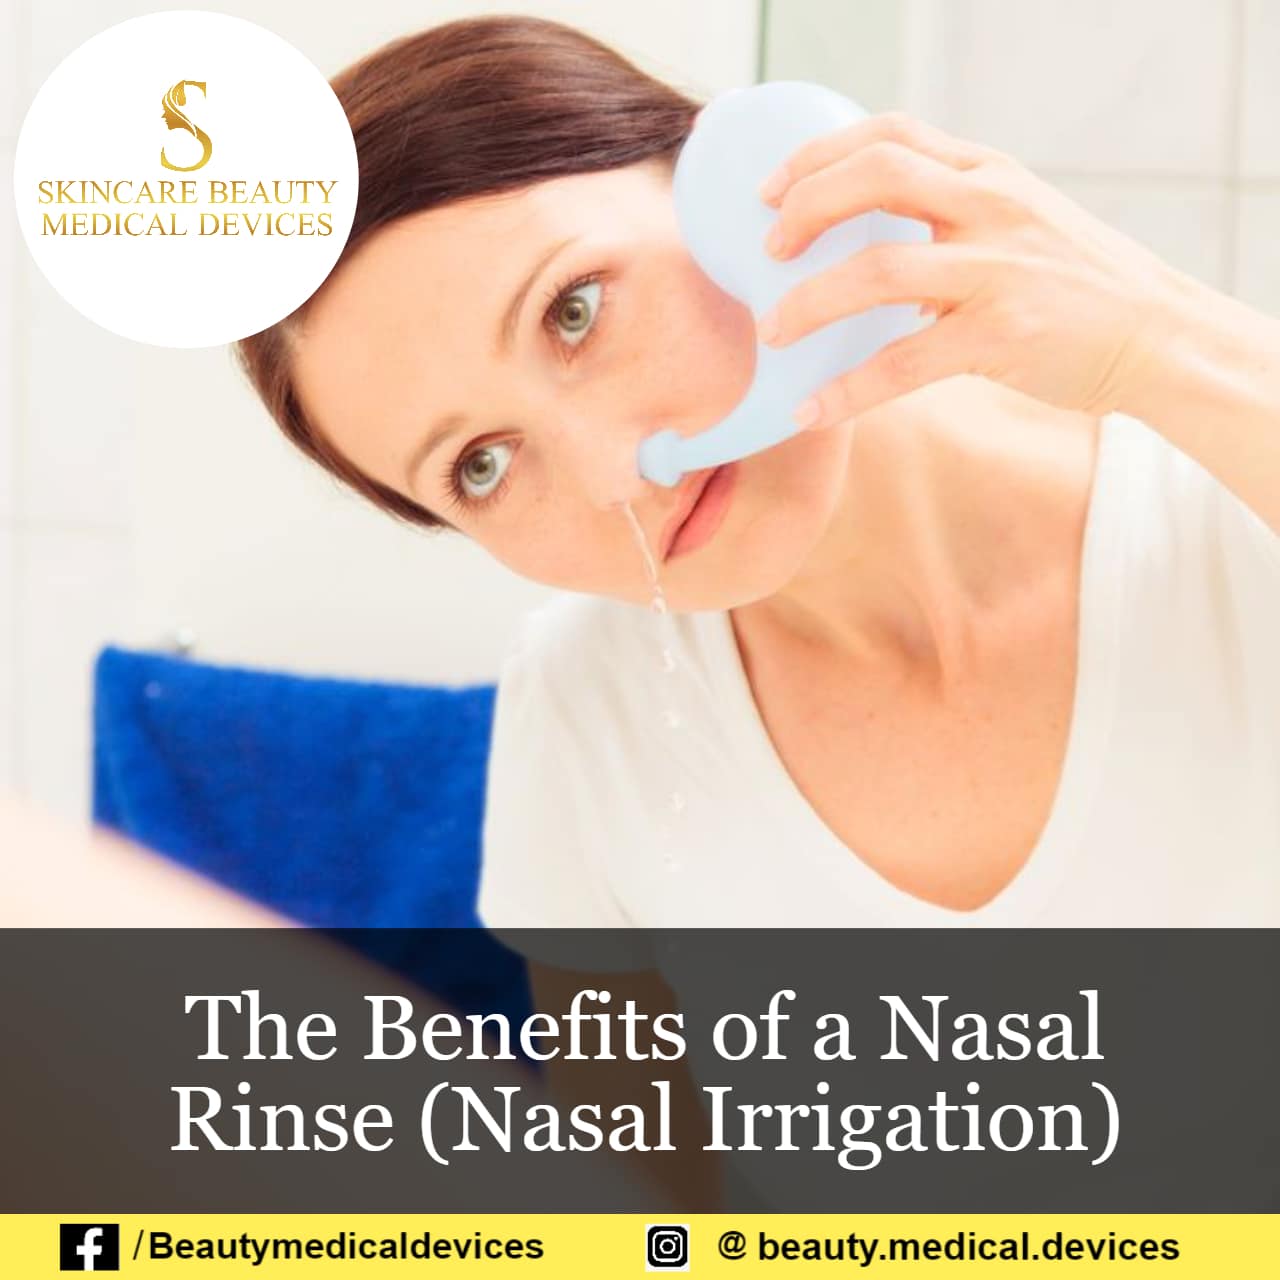 The Benefits of a Nasal Rinse (Nasal Irrigation)